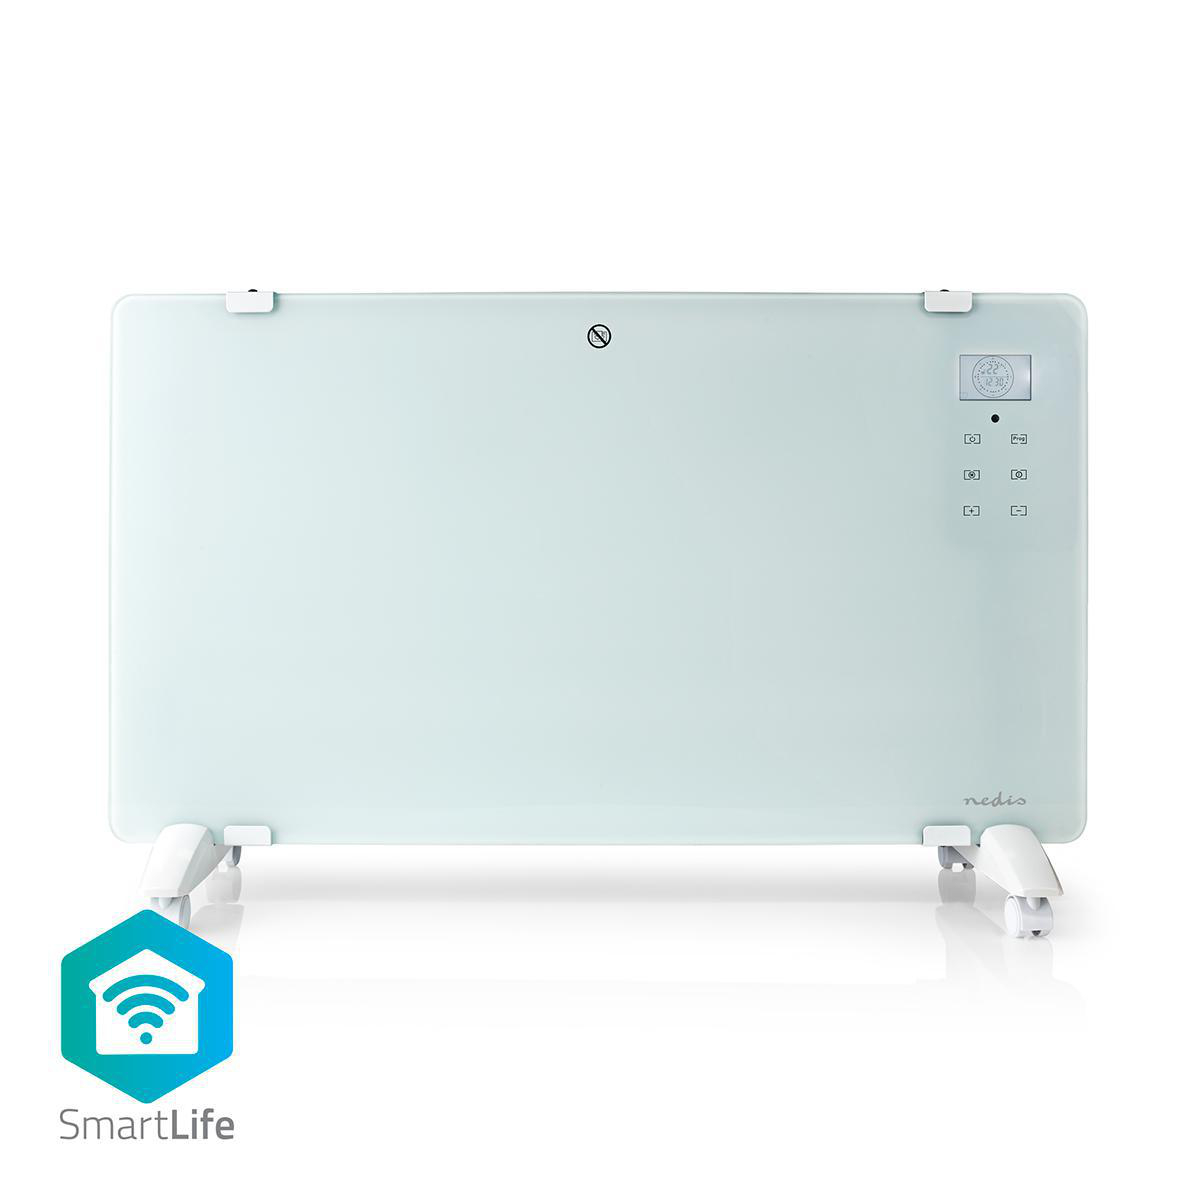 Nedis SmartLife chytrý WiFi skleněný konvekční přímotop, LCD displej, 2000 W, bílá (WIFIHTPL20FWT)